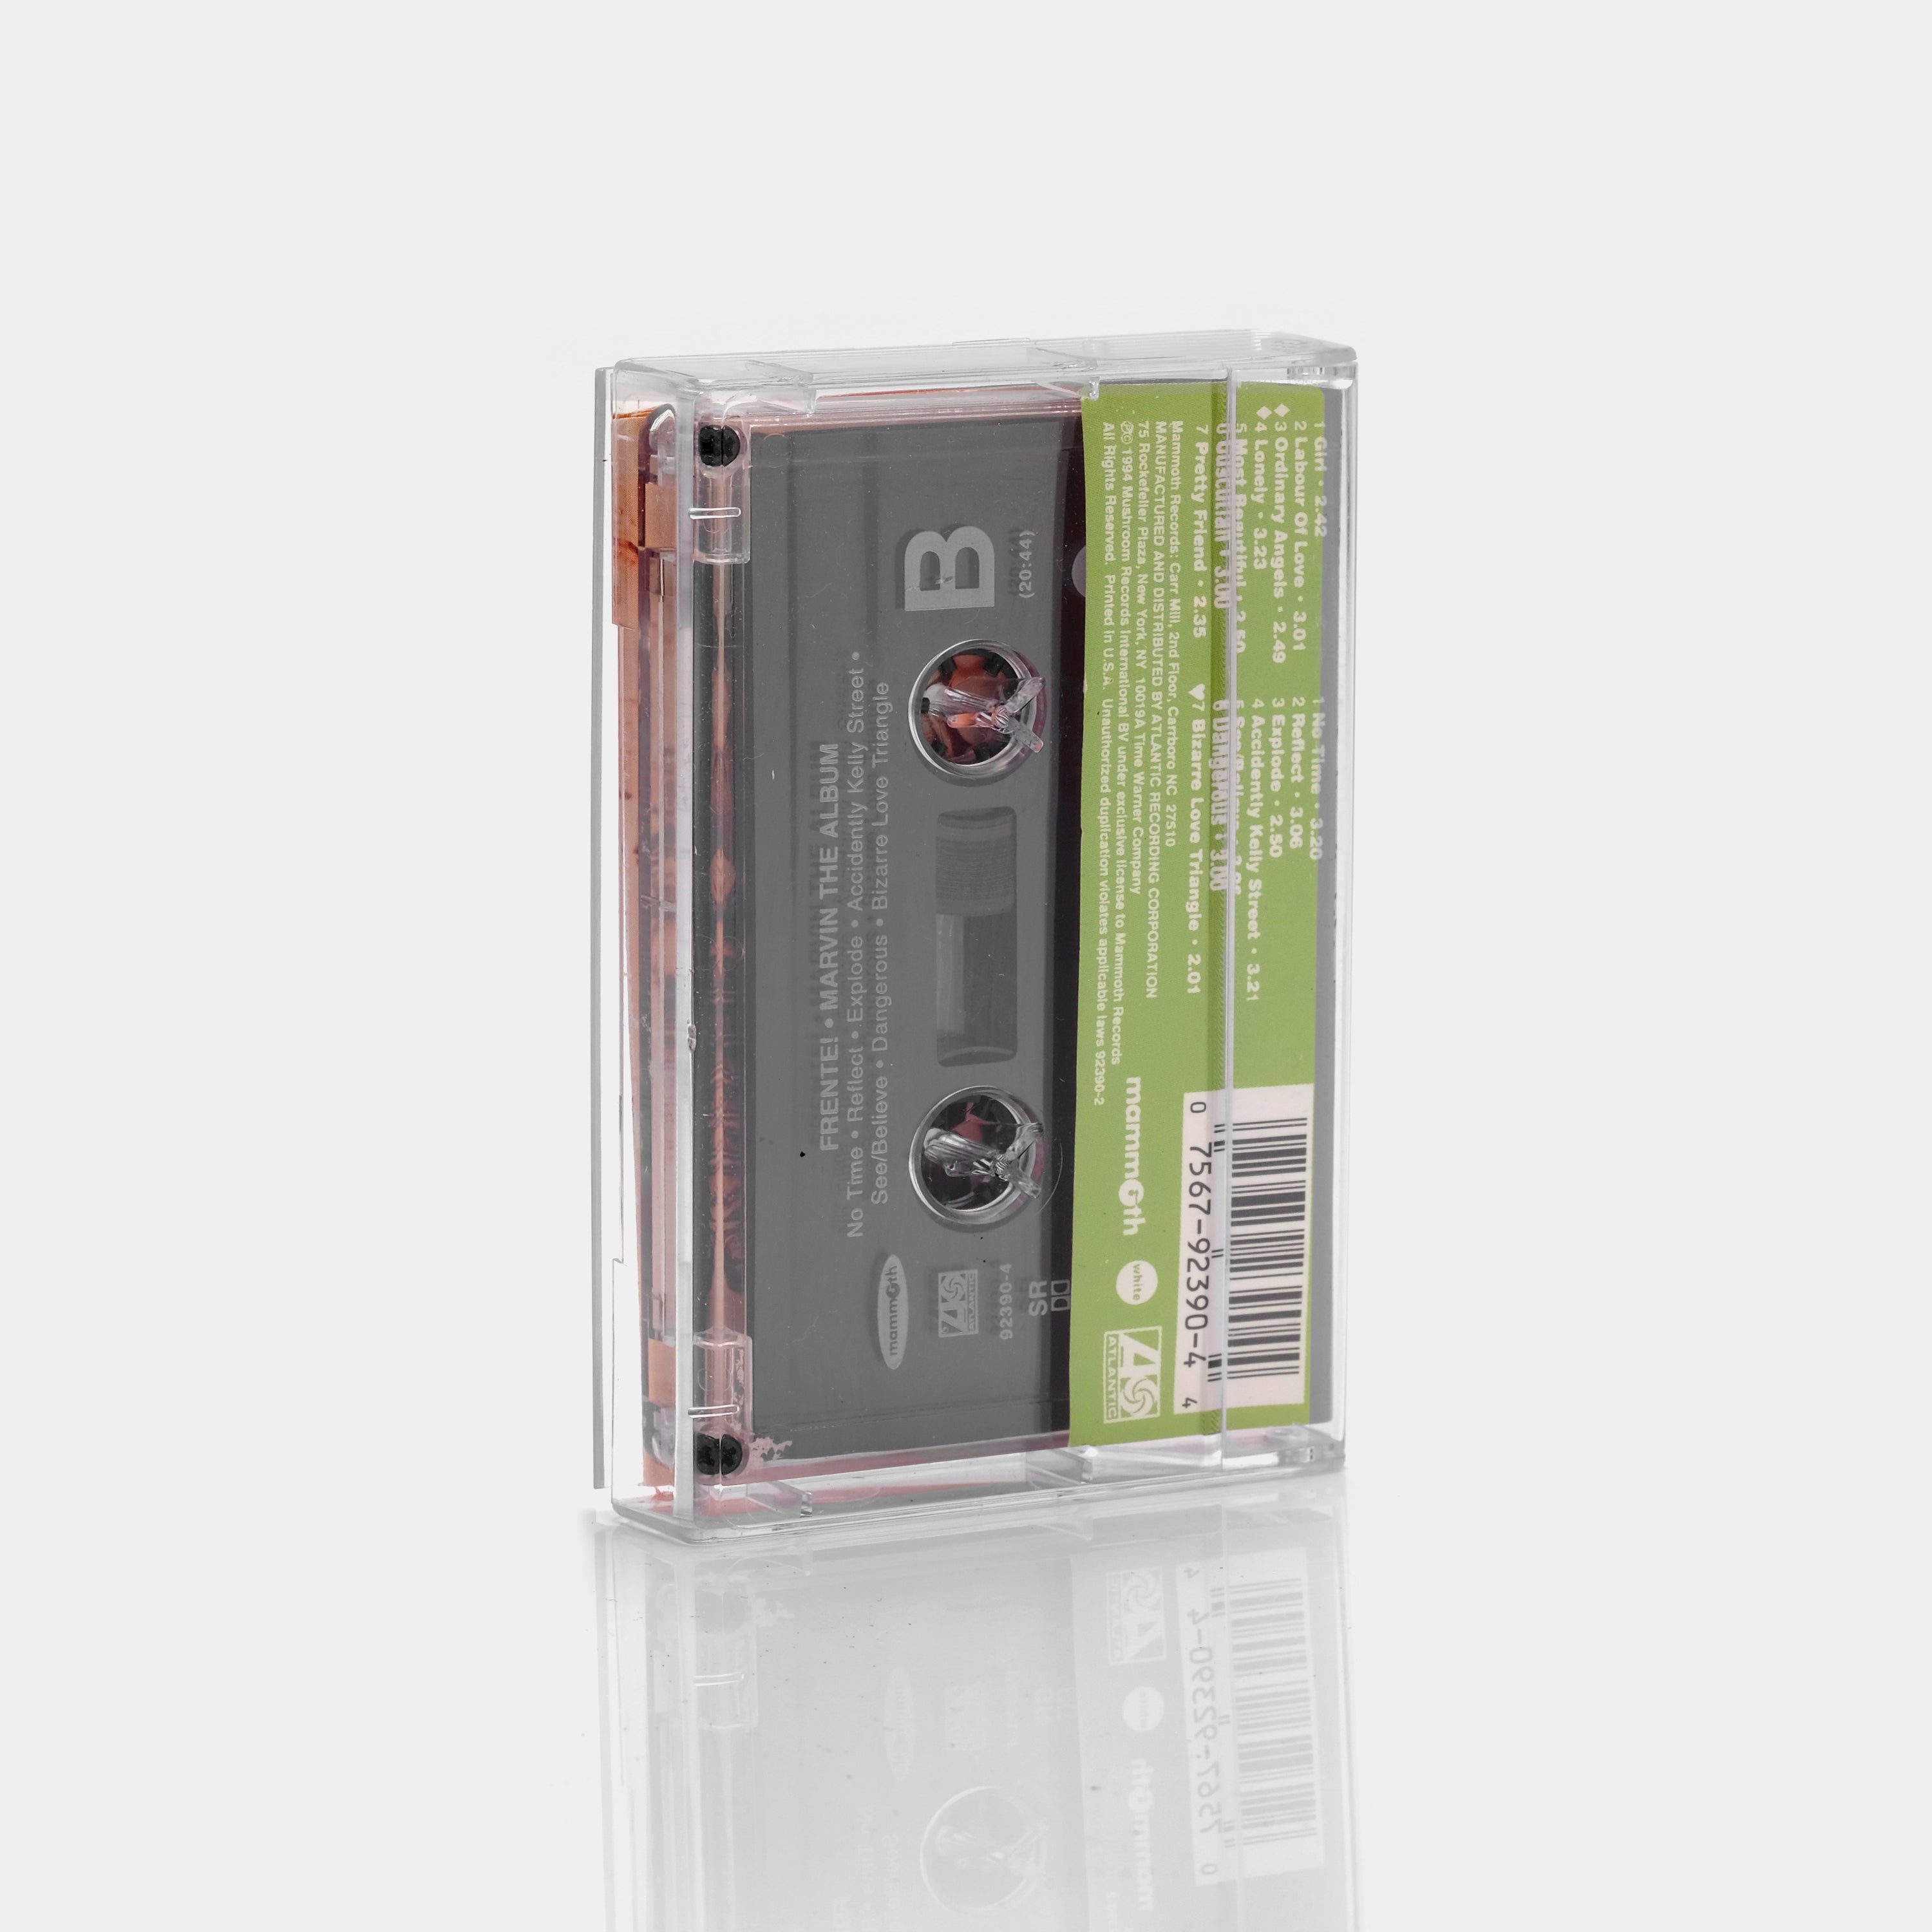 Frente! - Marvin The Album Cassette Tape